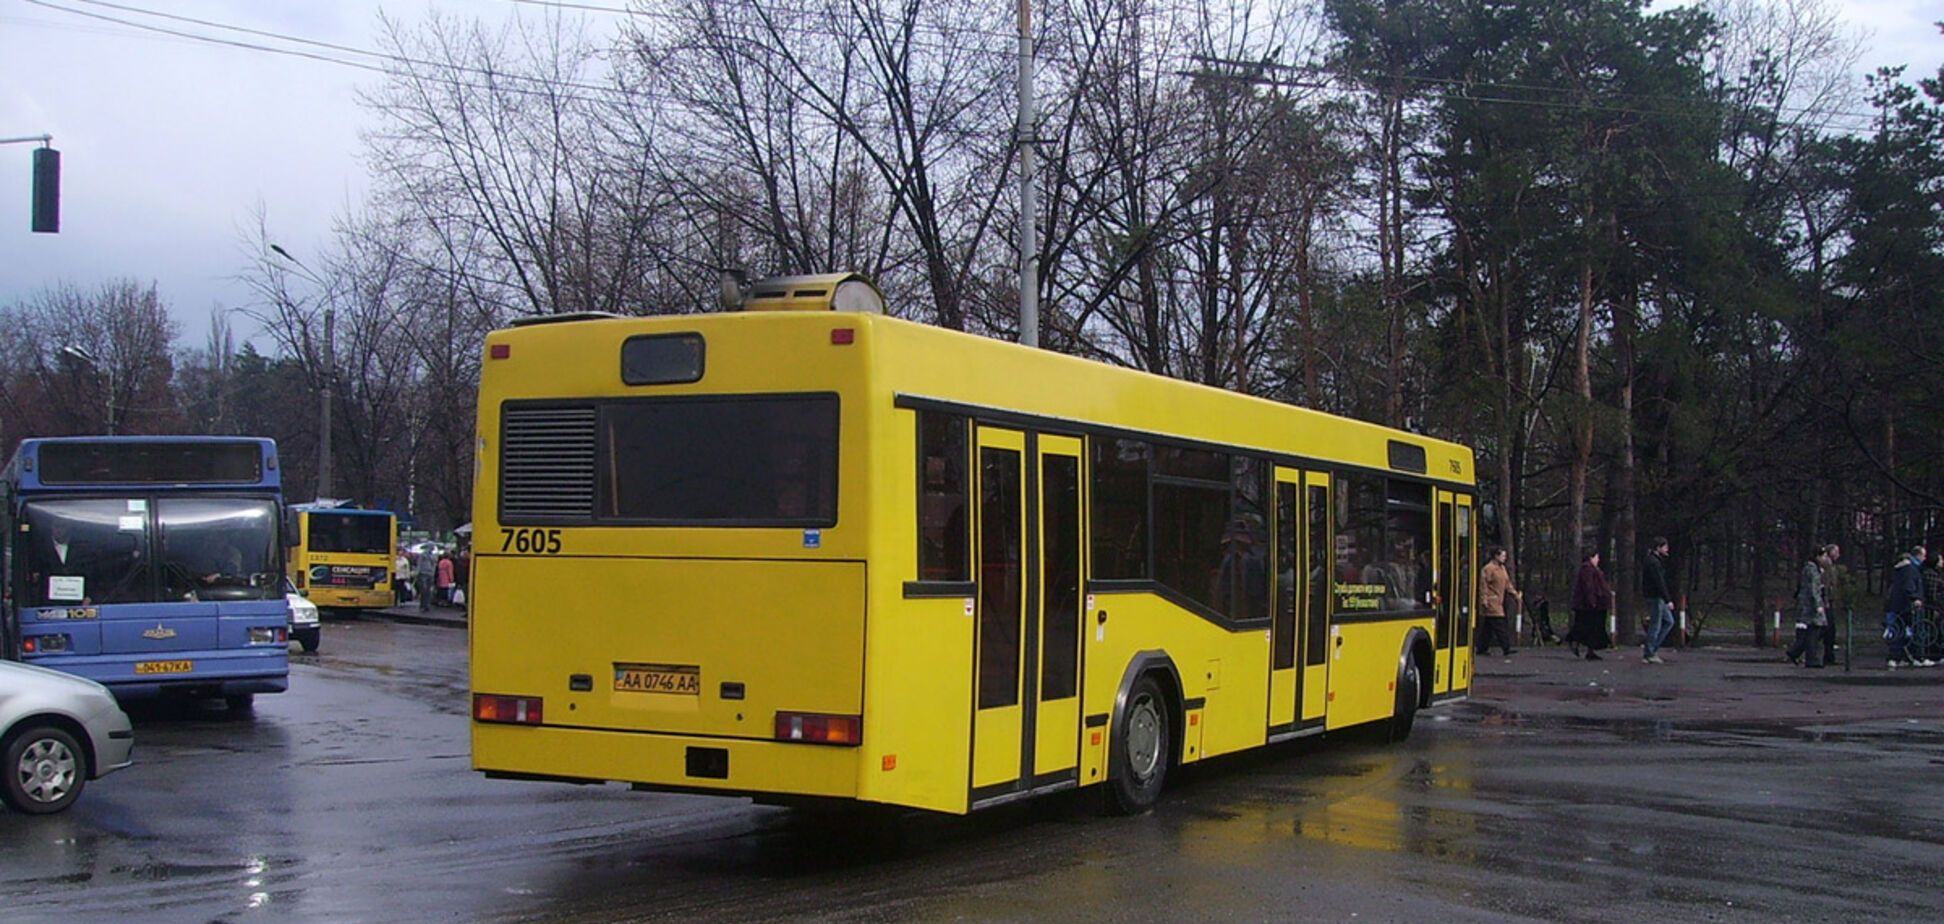 Безкоштовний автобус до Києва: названа причина скасування маршруту